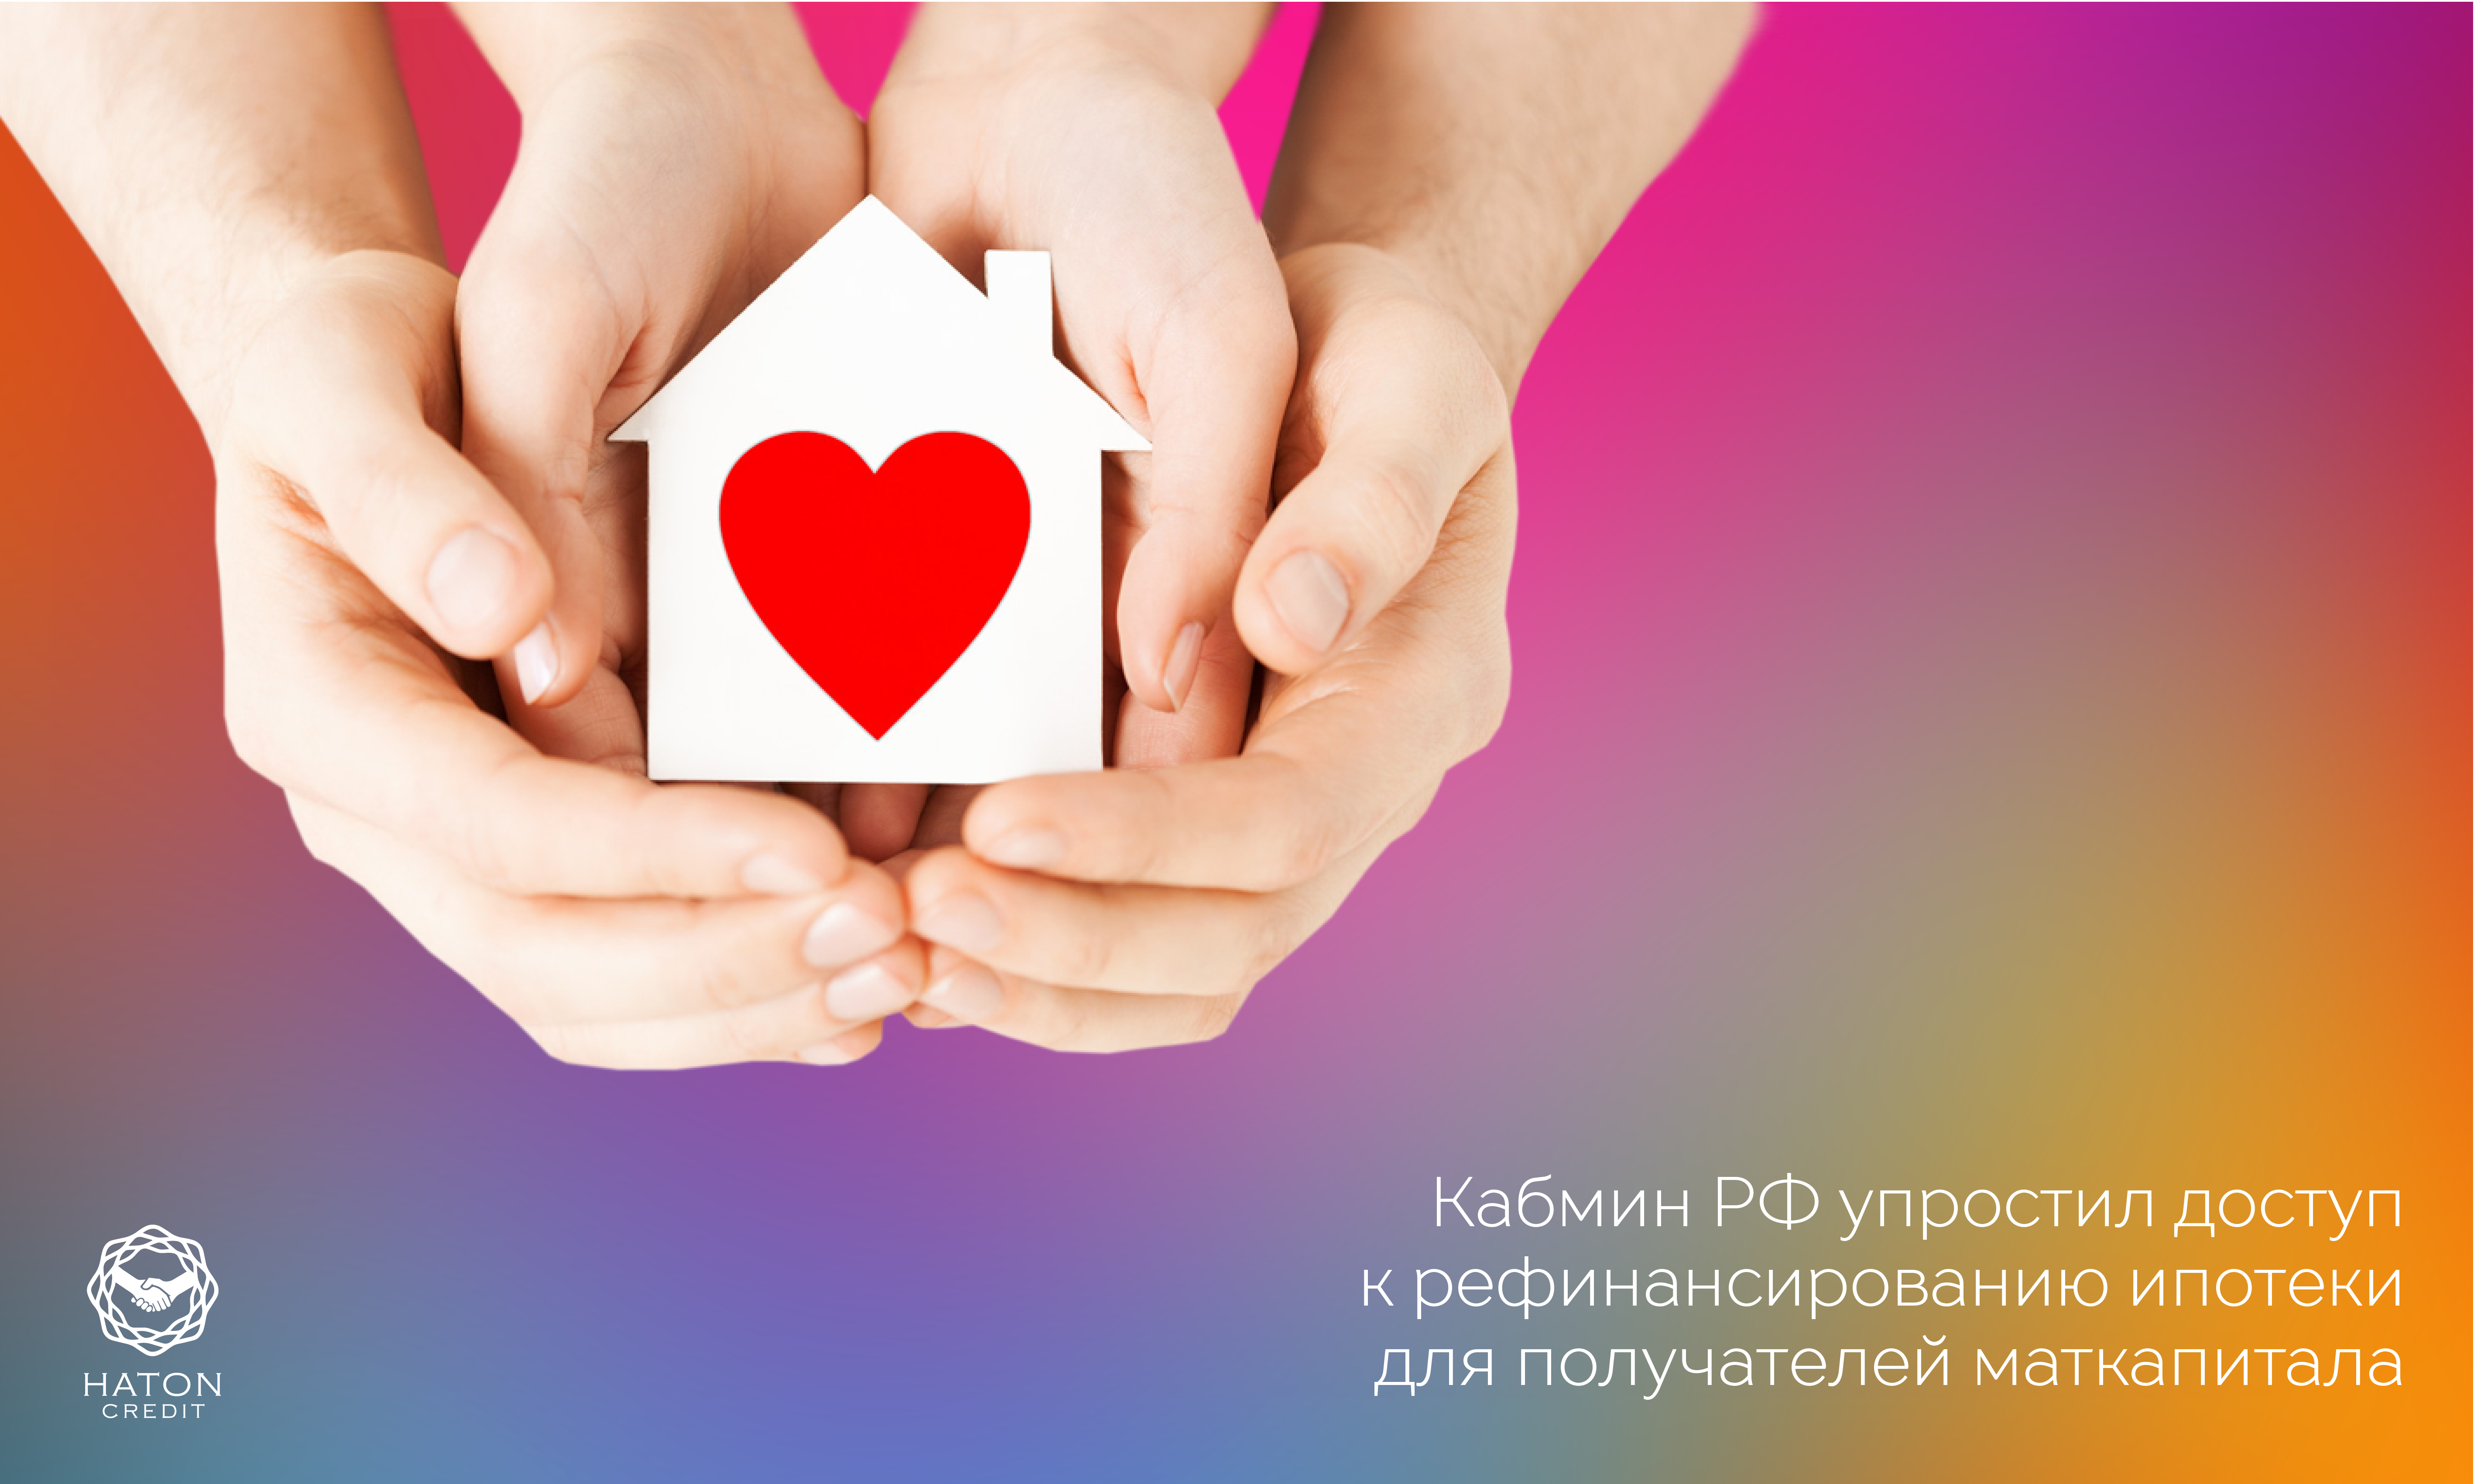 Кабмин РФ упростил доступ к рефинансированию ипотеки для получателей маткапитала